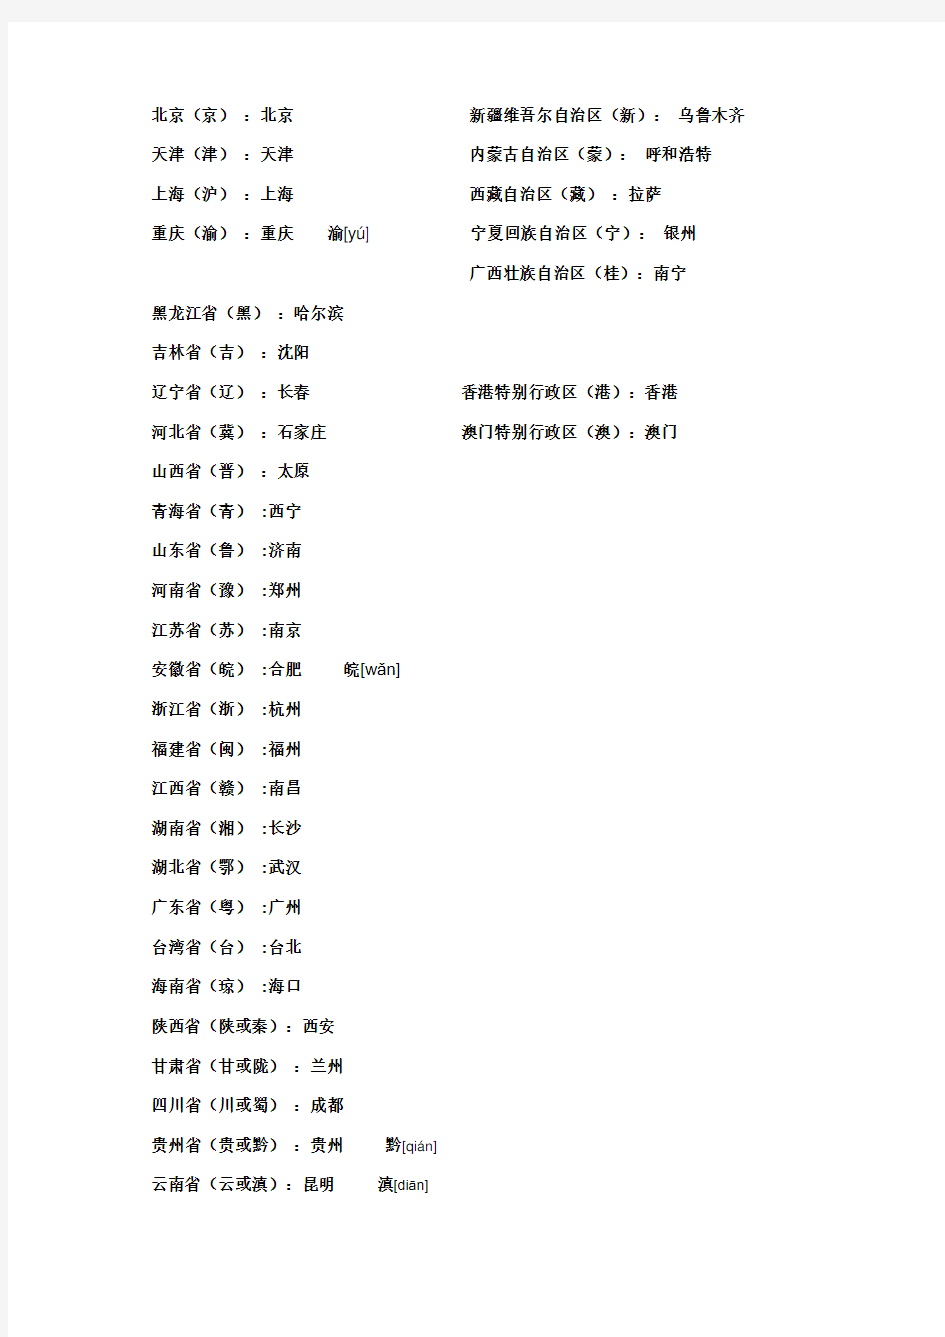 中国的省级行政单位、行政中心和简称一览表